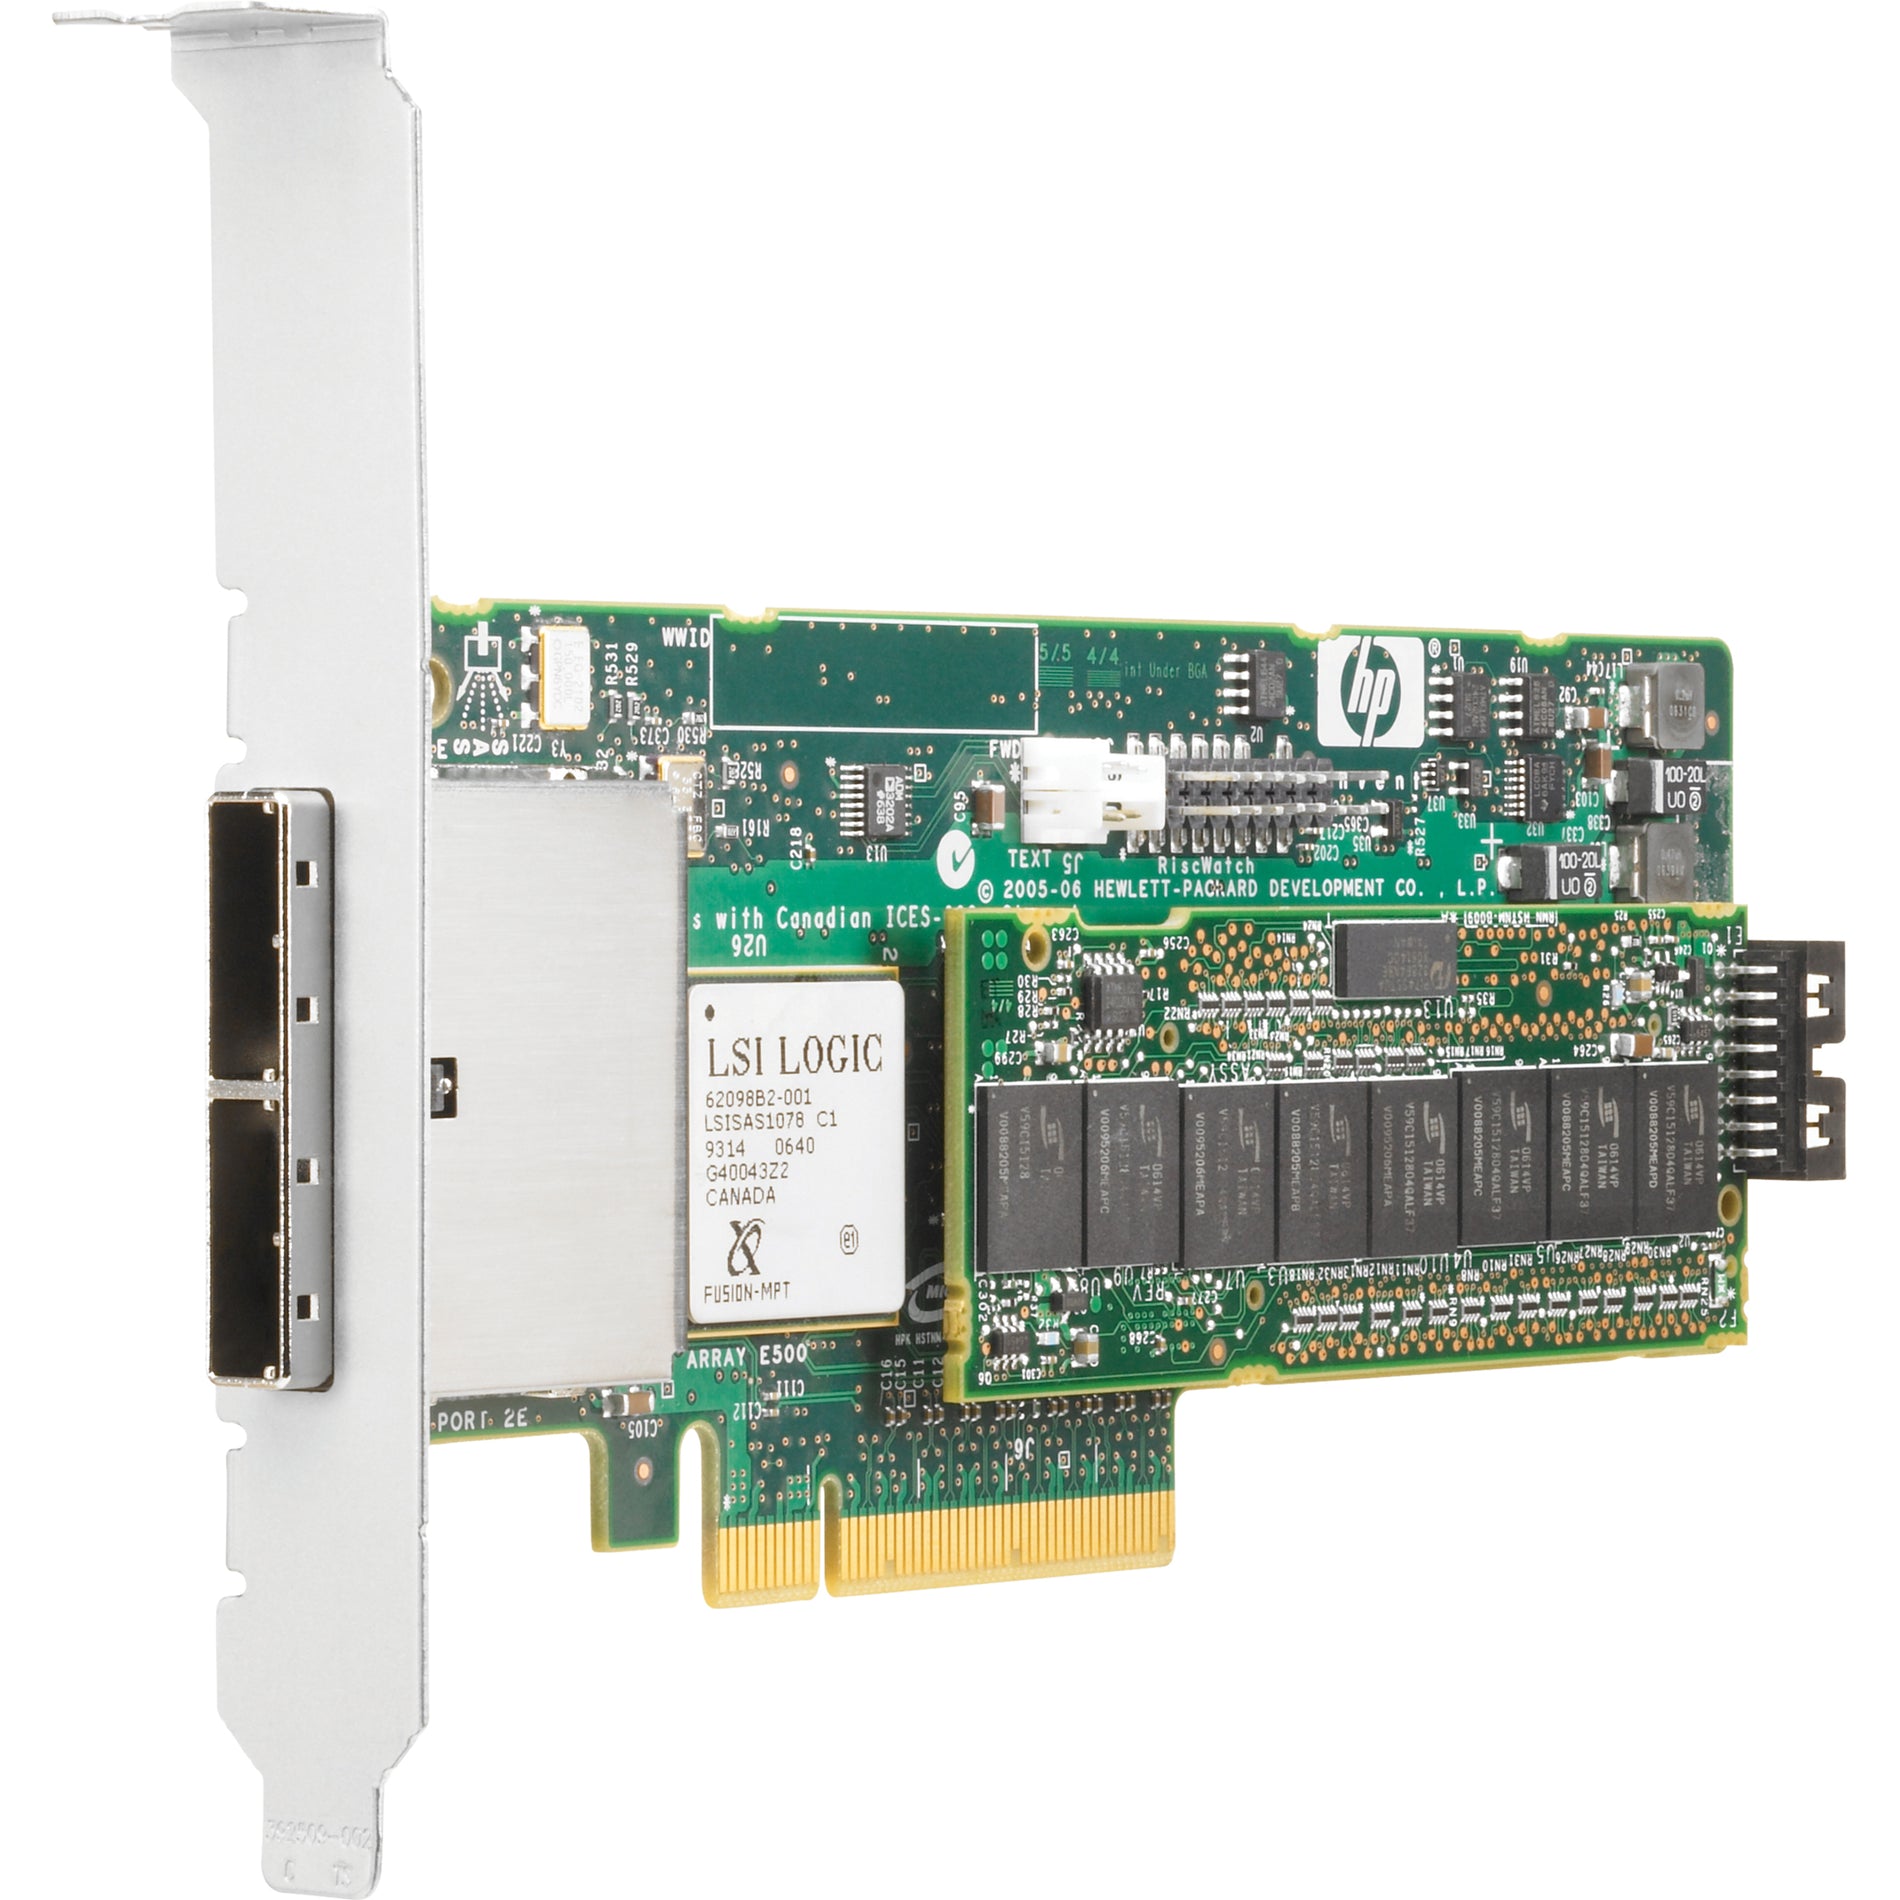 HP Smart Array E500 8 Port SAS RAID Controller (435129-B21)